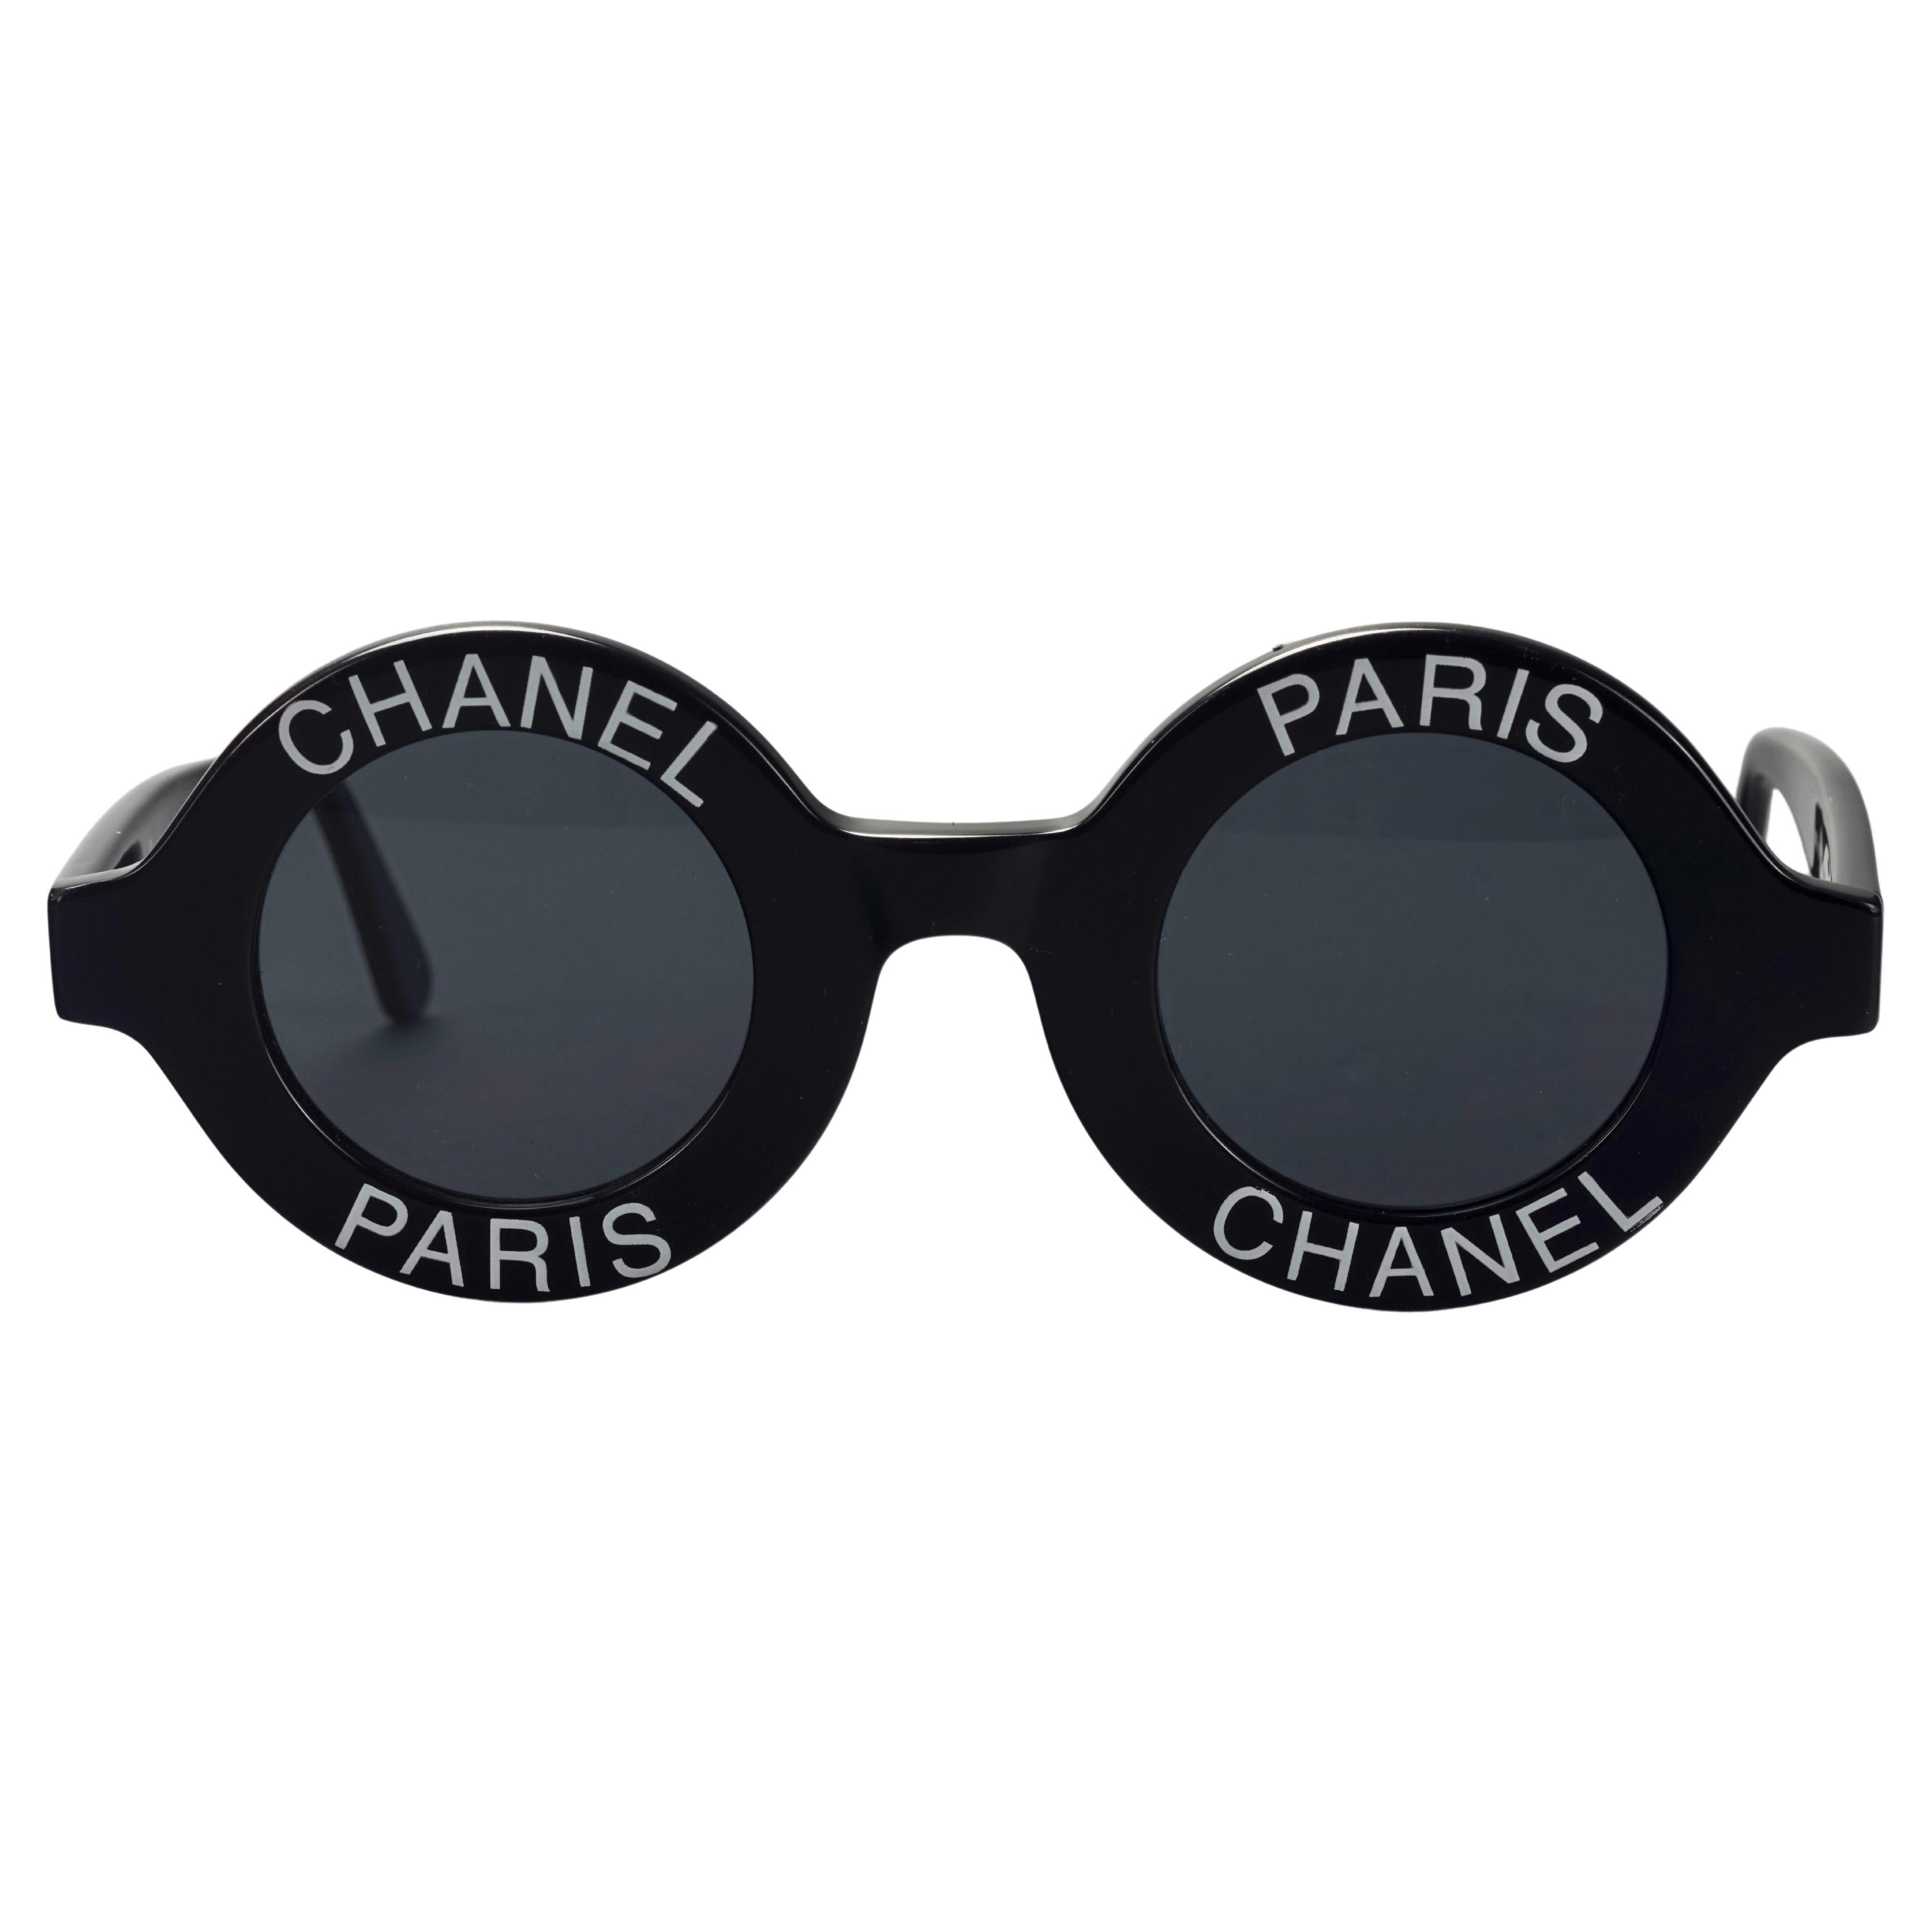 Chanel Pharrell Sunglasses - For Sale on 1stDibs  chanel pharrell  sunglasses price, chanel sunglasses pharrell, pharrell tiffany glasses price